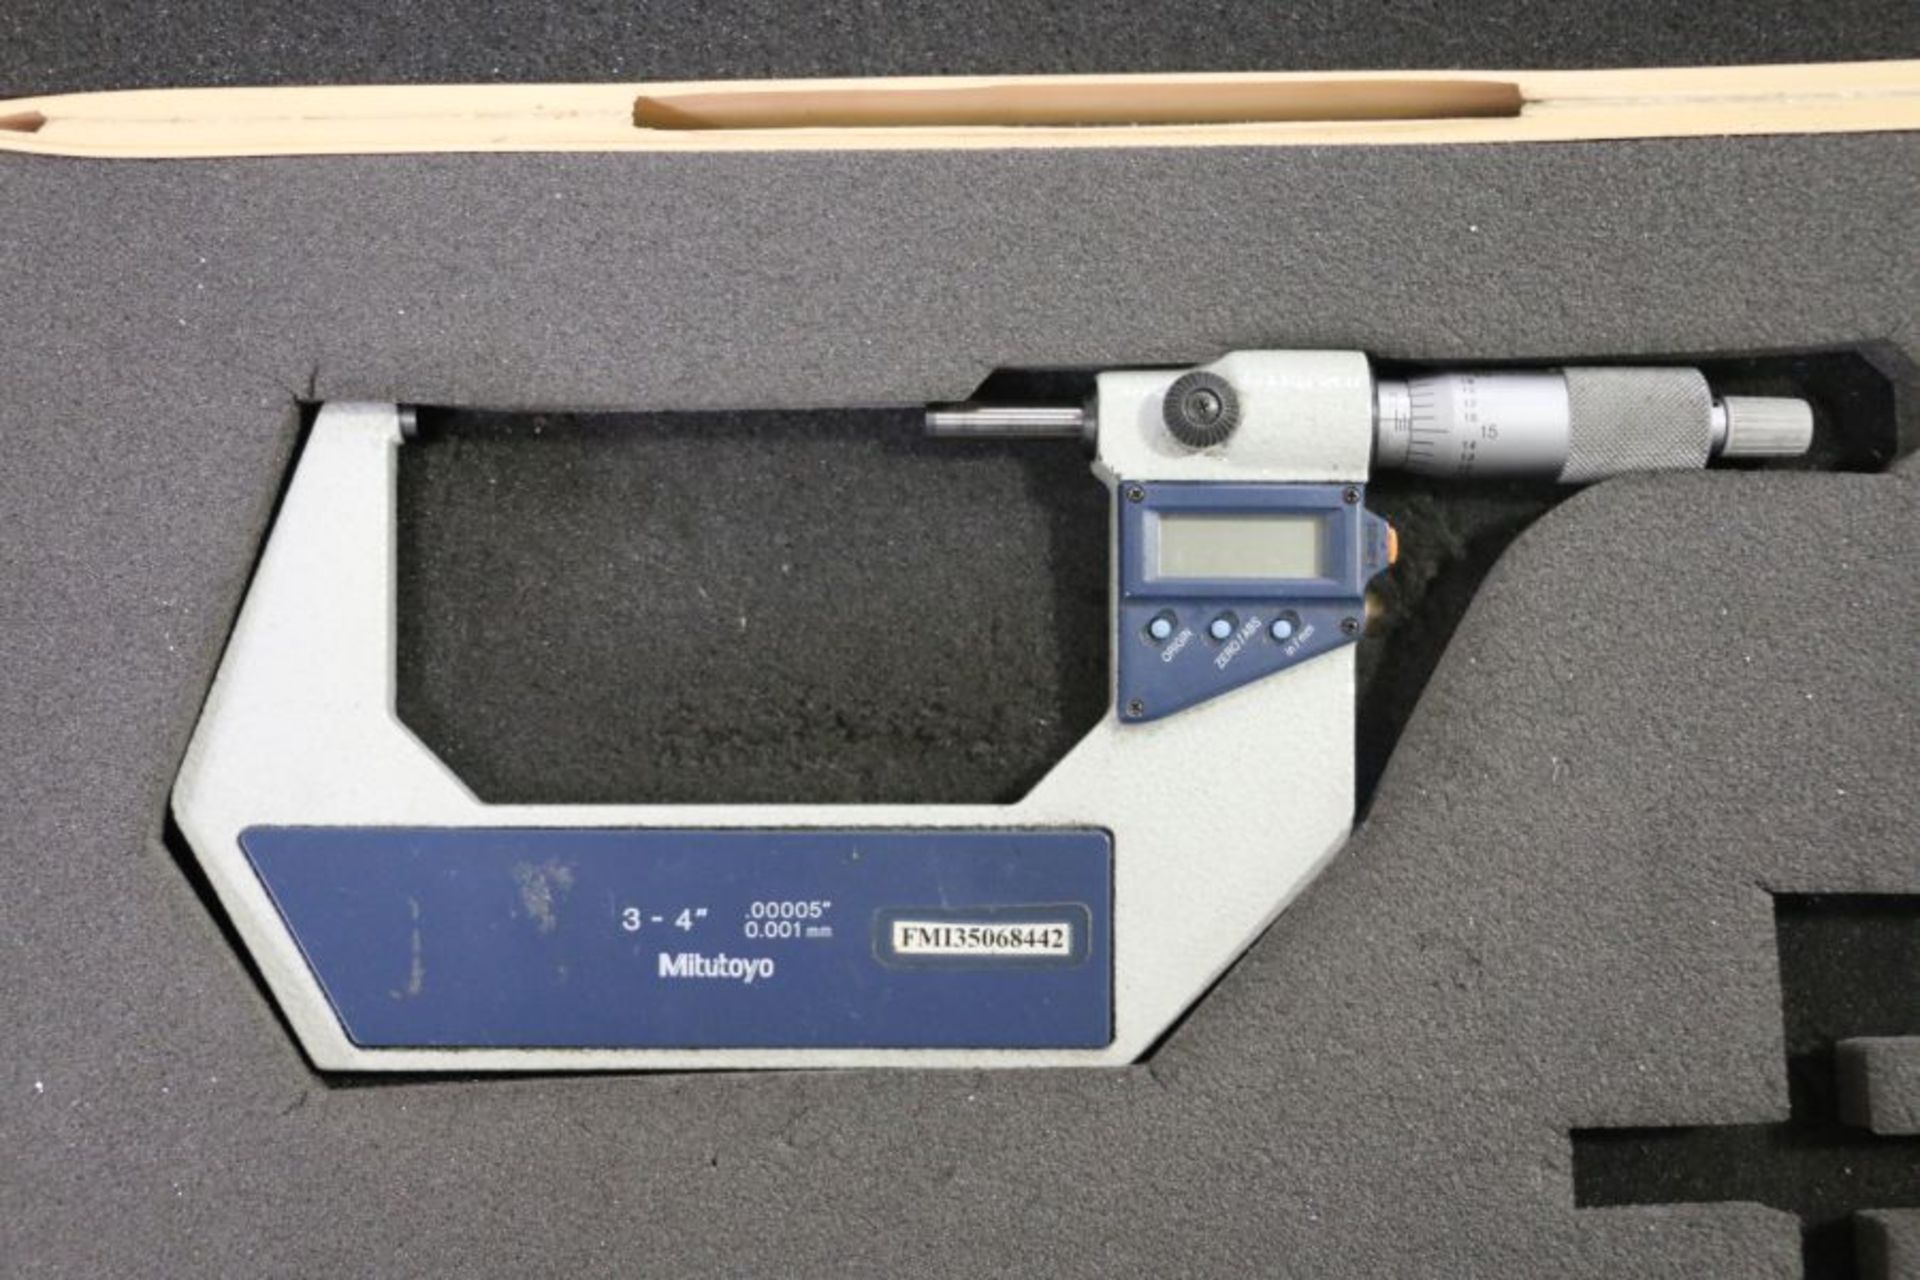 Mitutoyo 3" - 4" Digitial Micrometer - Image 2 of 4